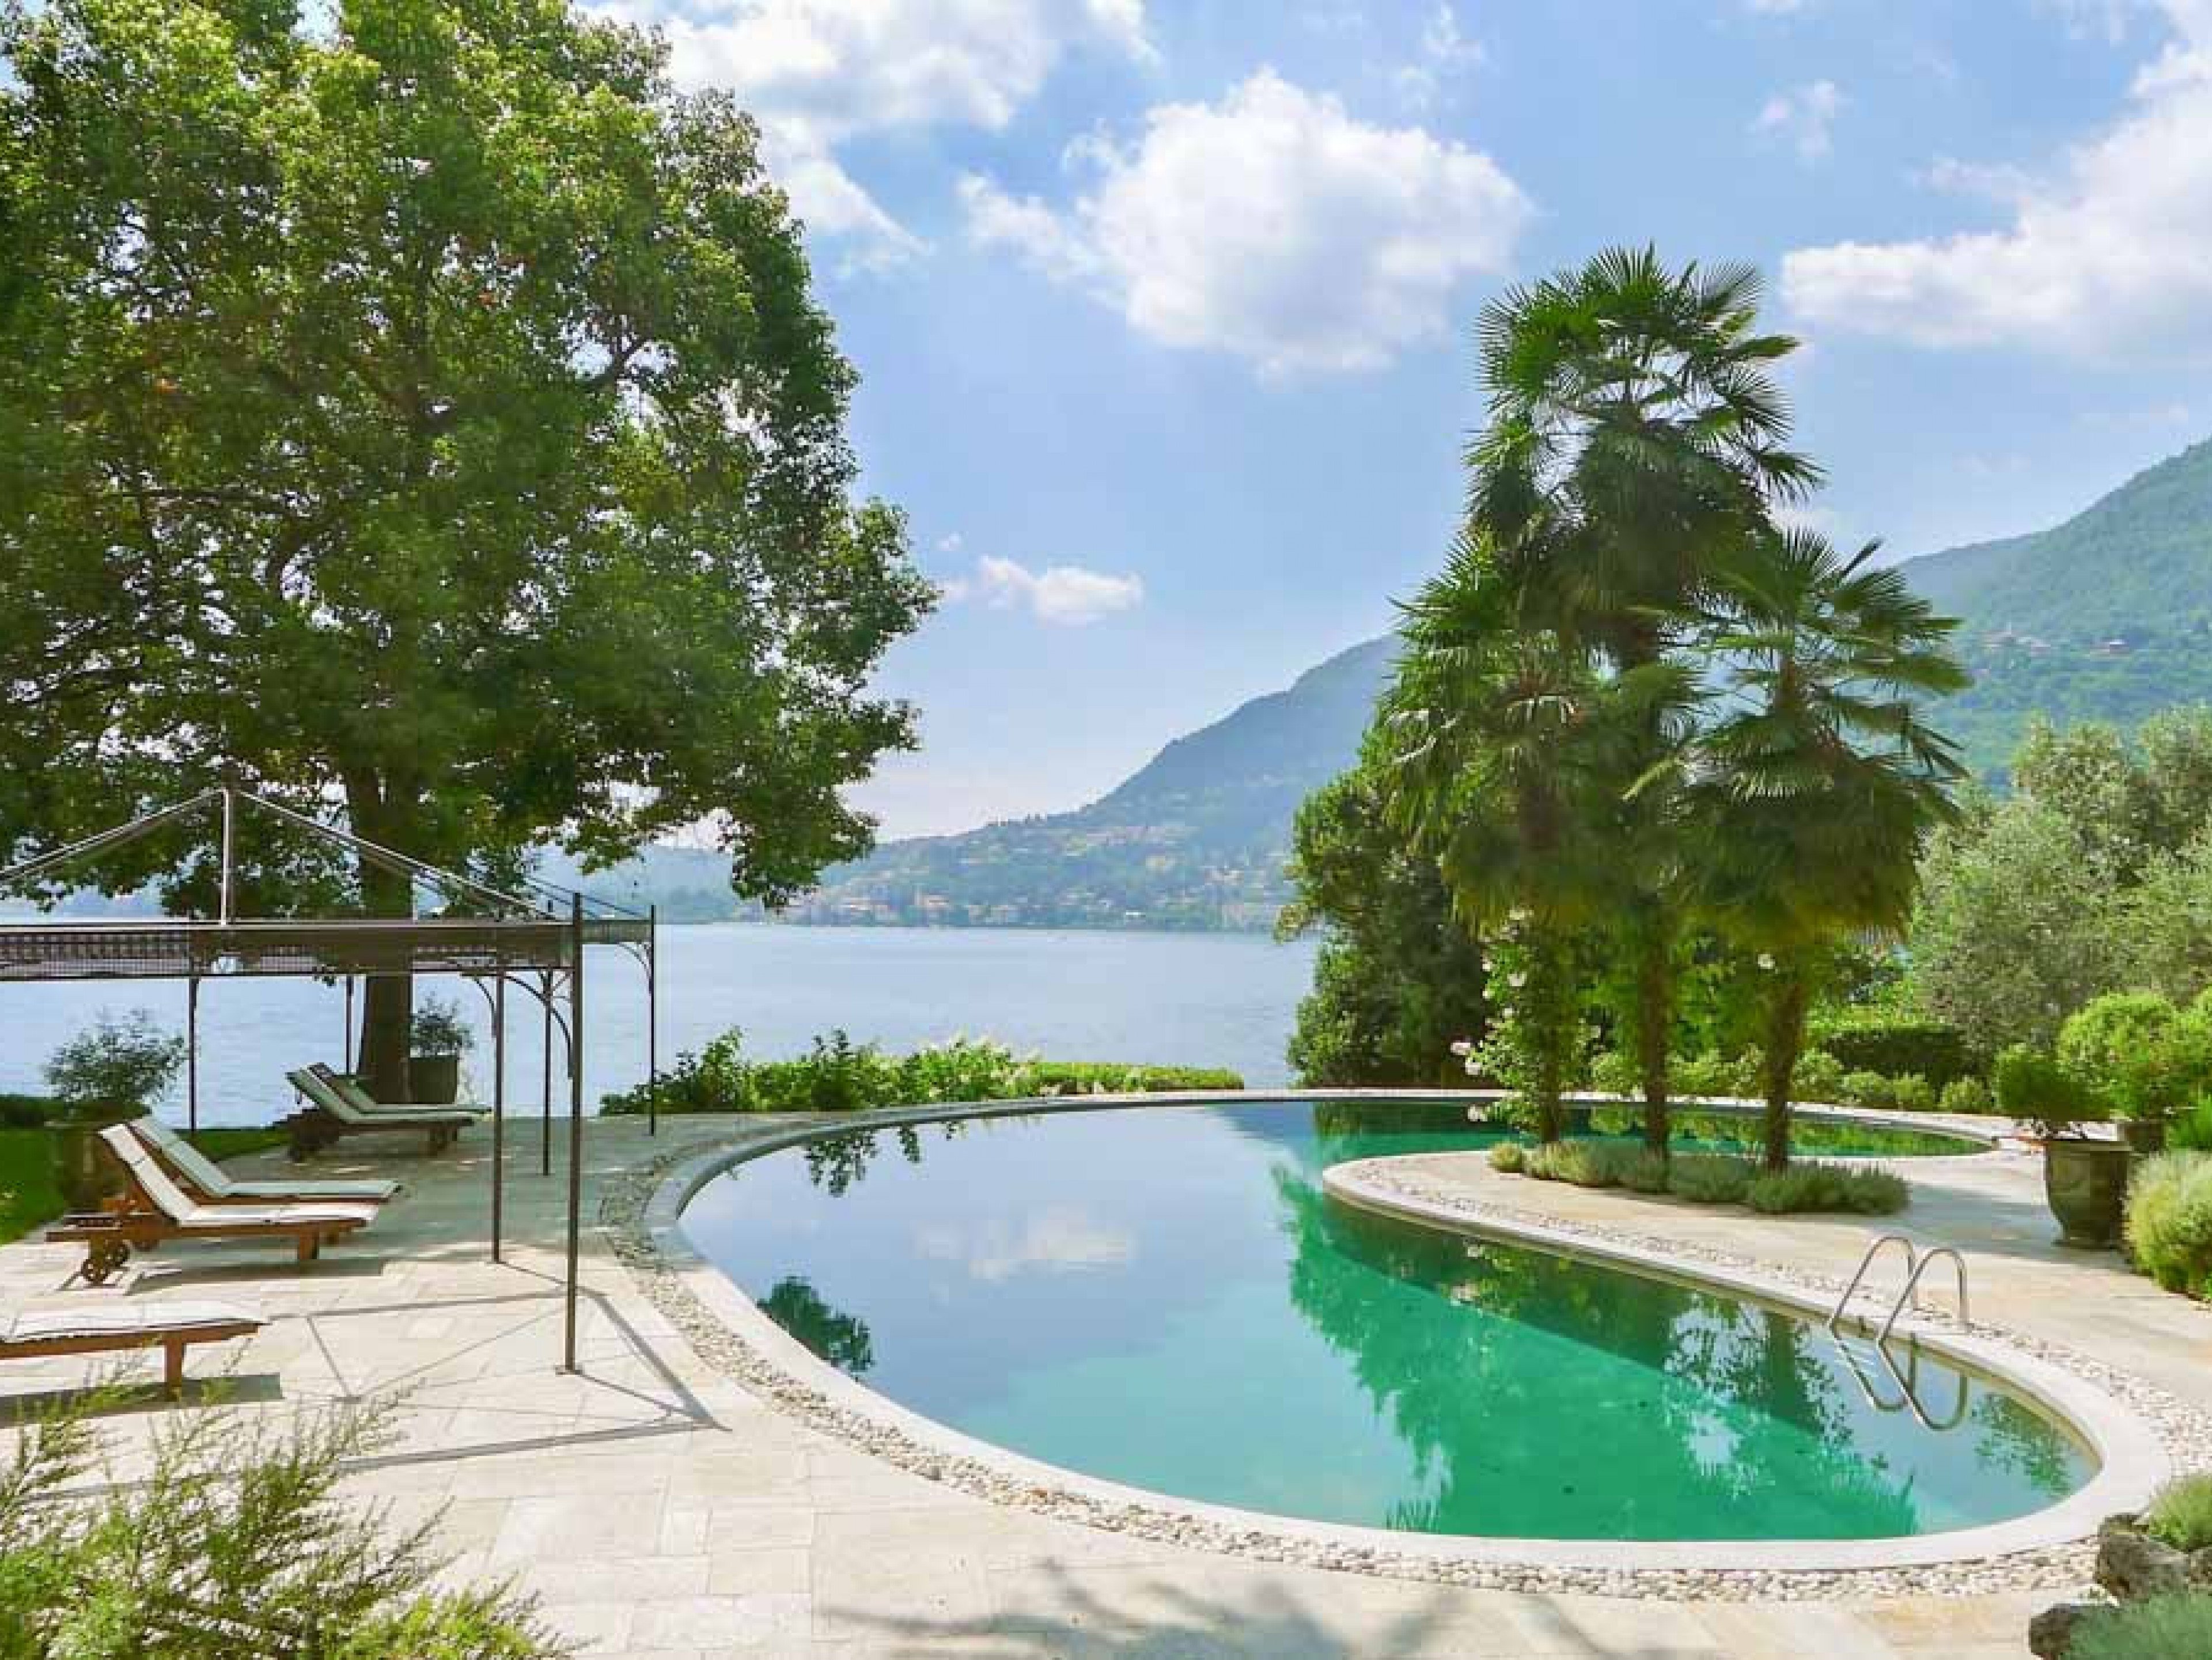 Lake Como villa rentals with pools - Maria